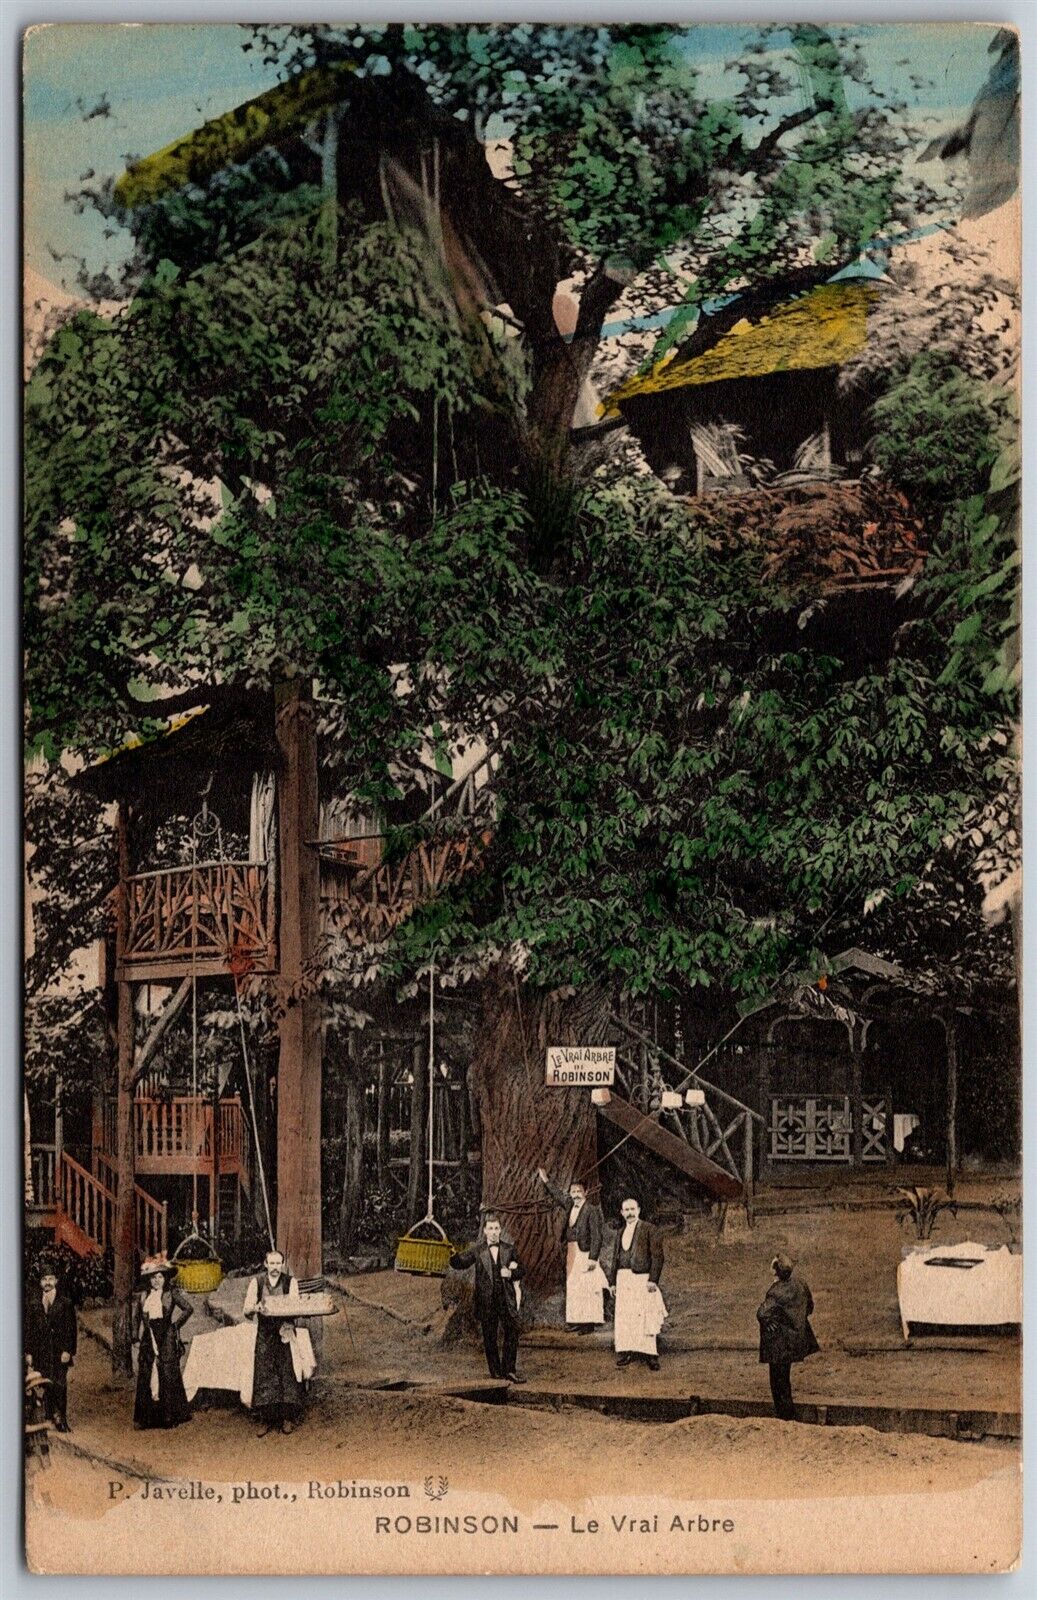 Vtg Robinson France Le Vrai Arbre Treehouse Restaurant Paris 1910s View Postcard